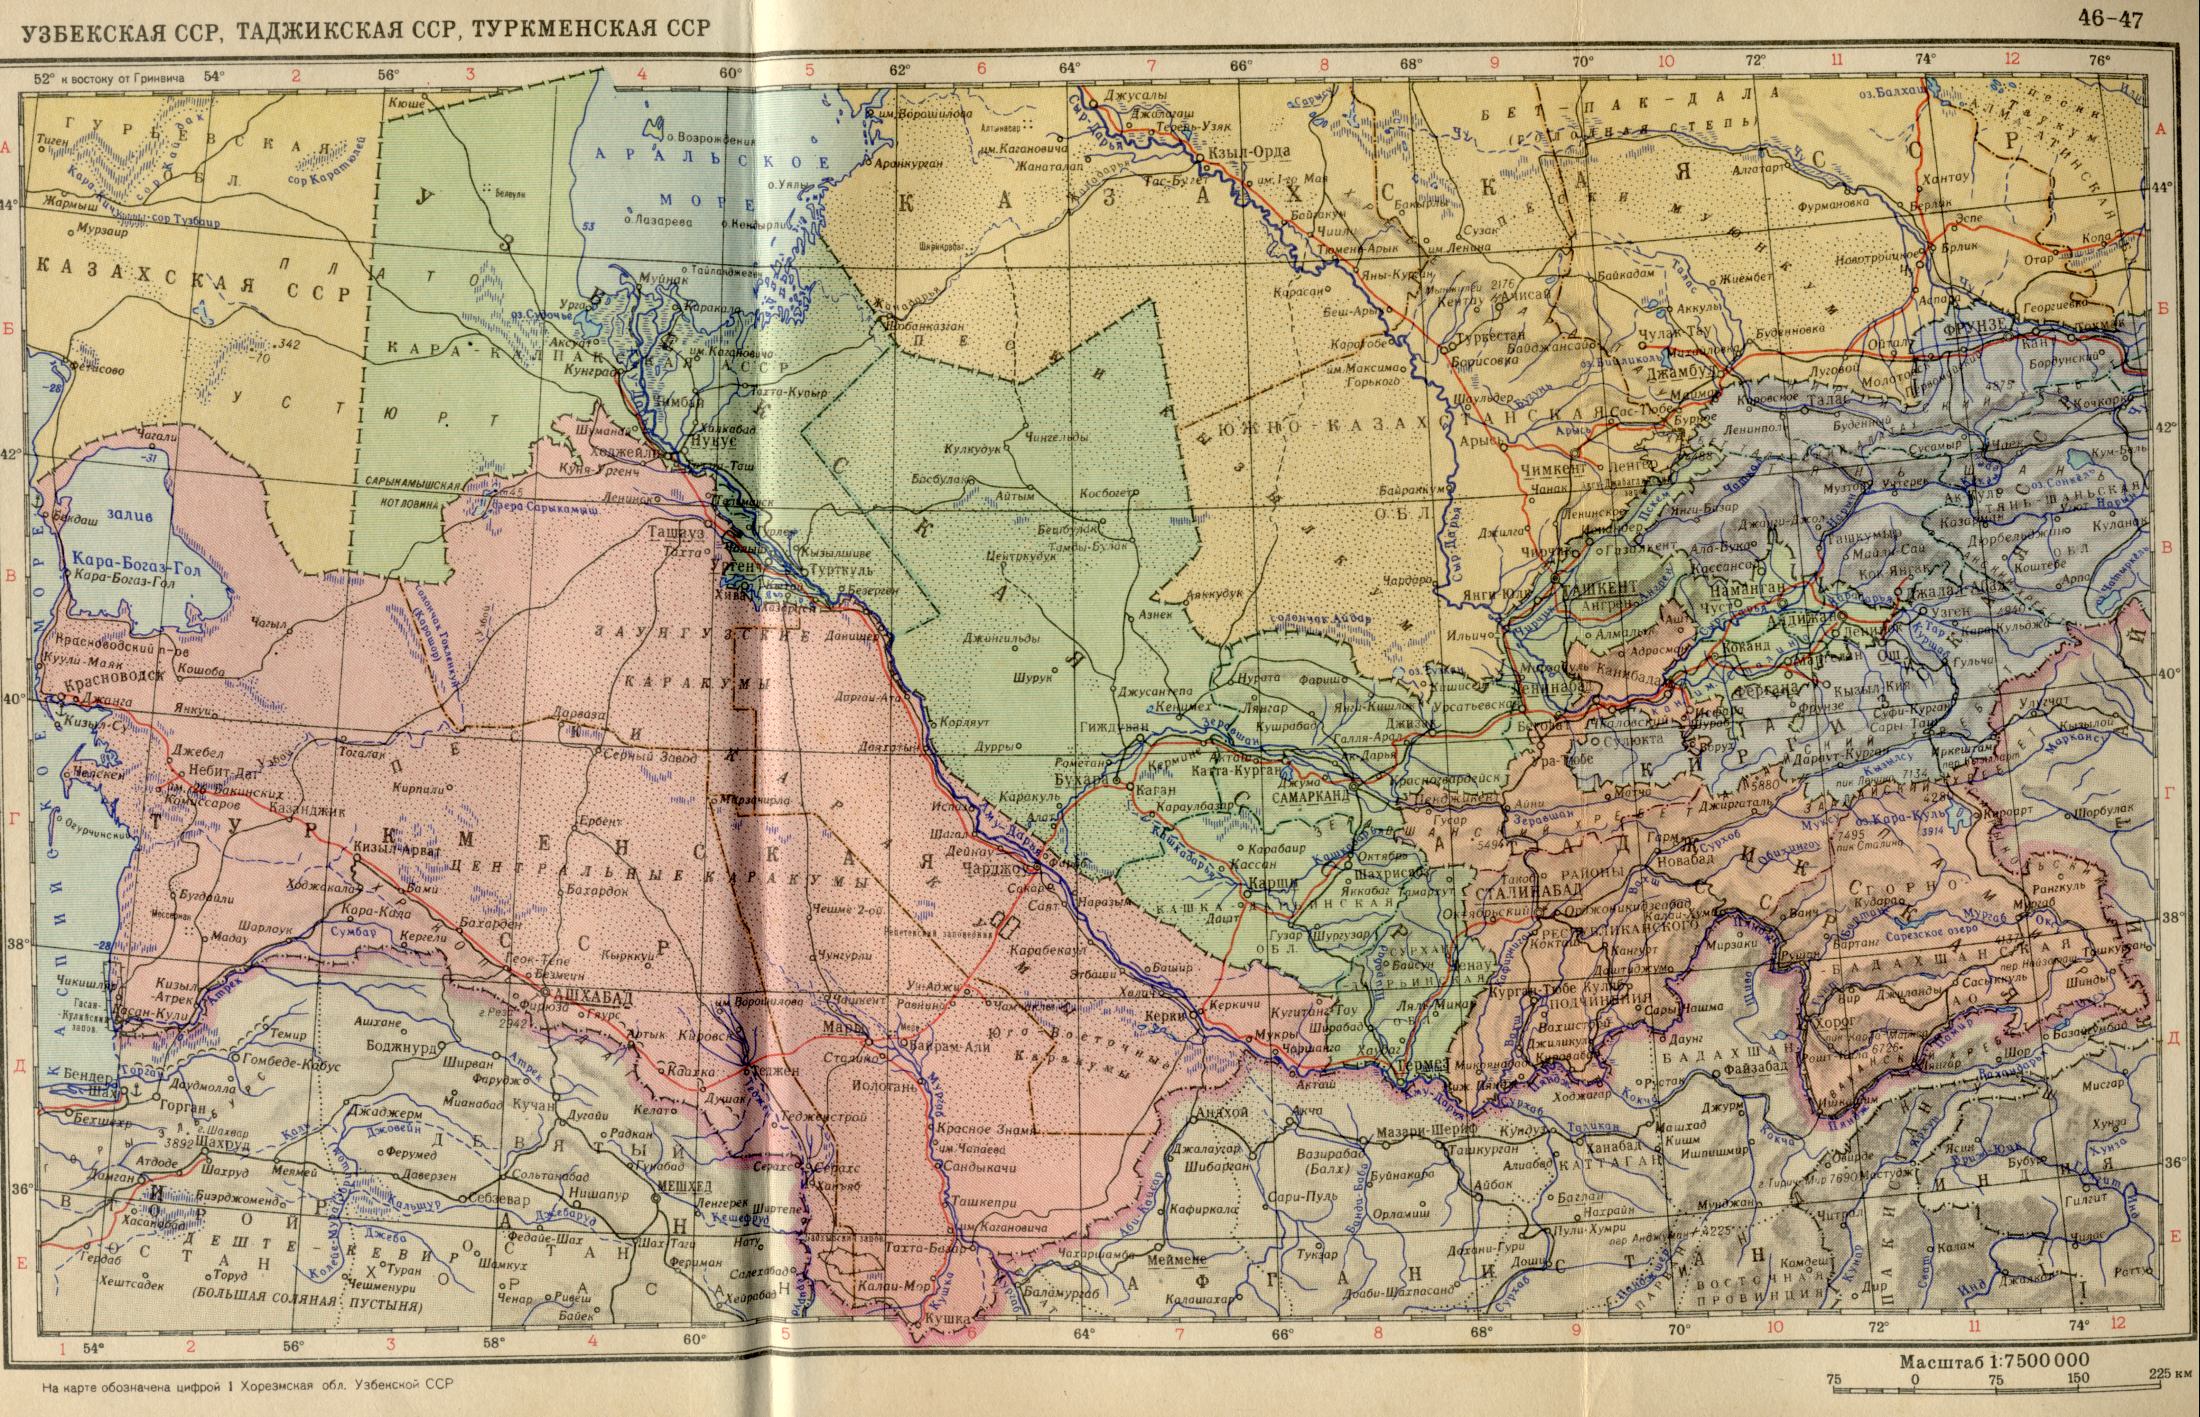 1956 год. Политическая карта мира. Узбекская ССР, Таджикская ССР, Туркменская ССР в 1956 году. Скачать бесплатно подробную карту 